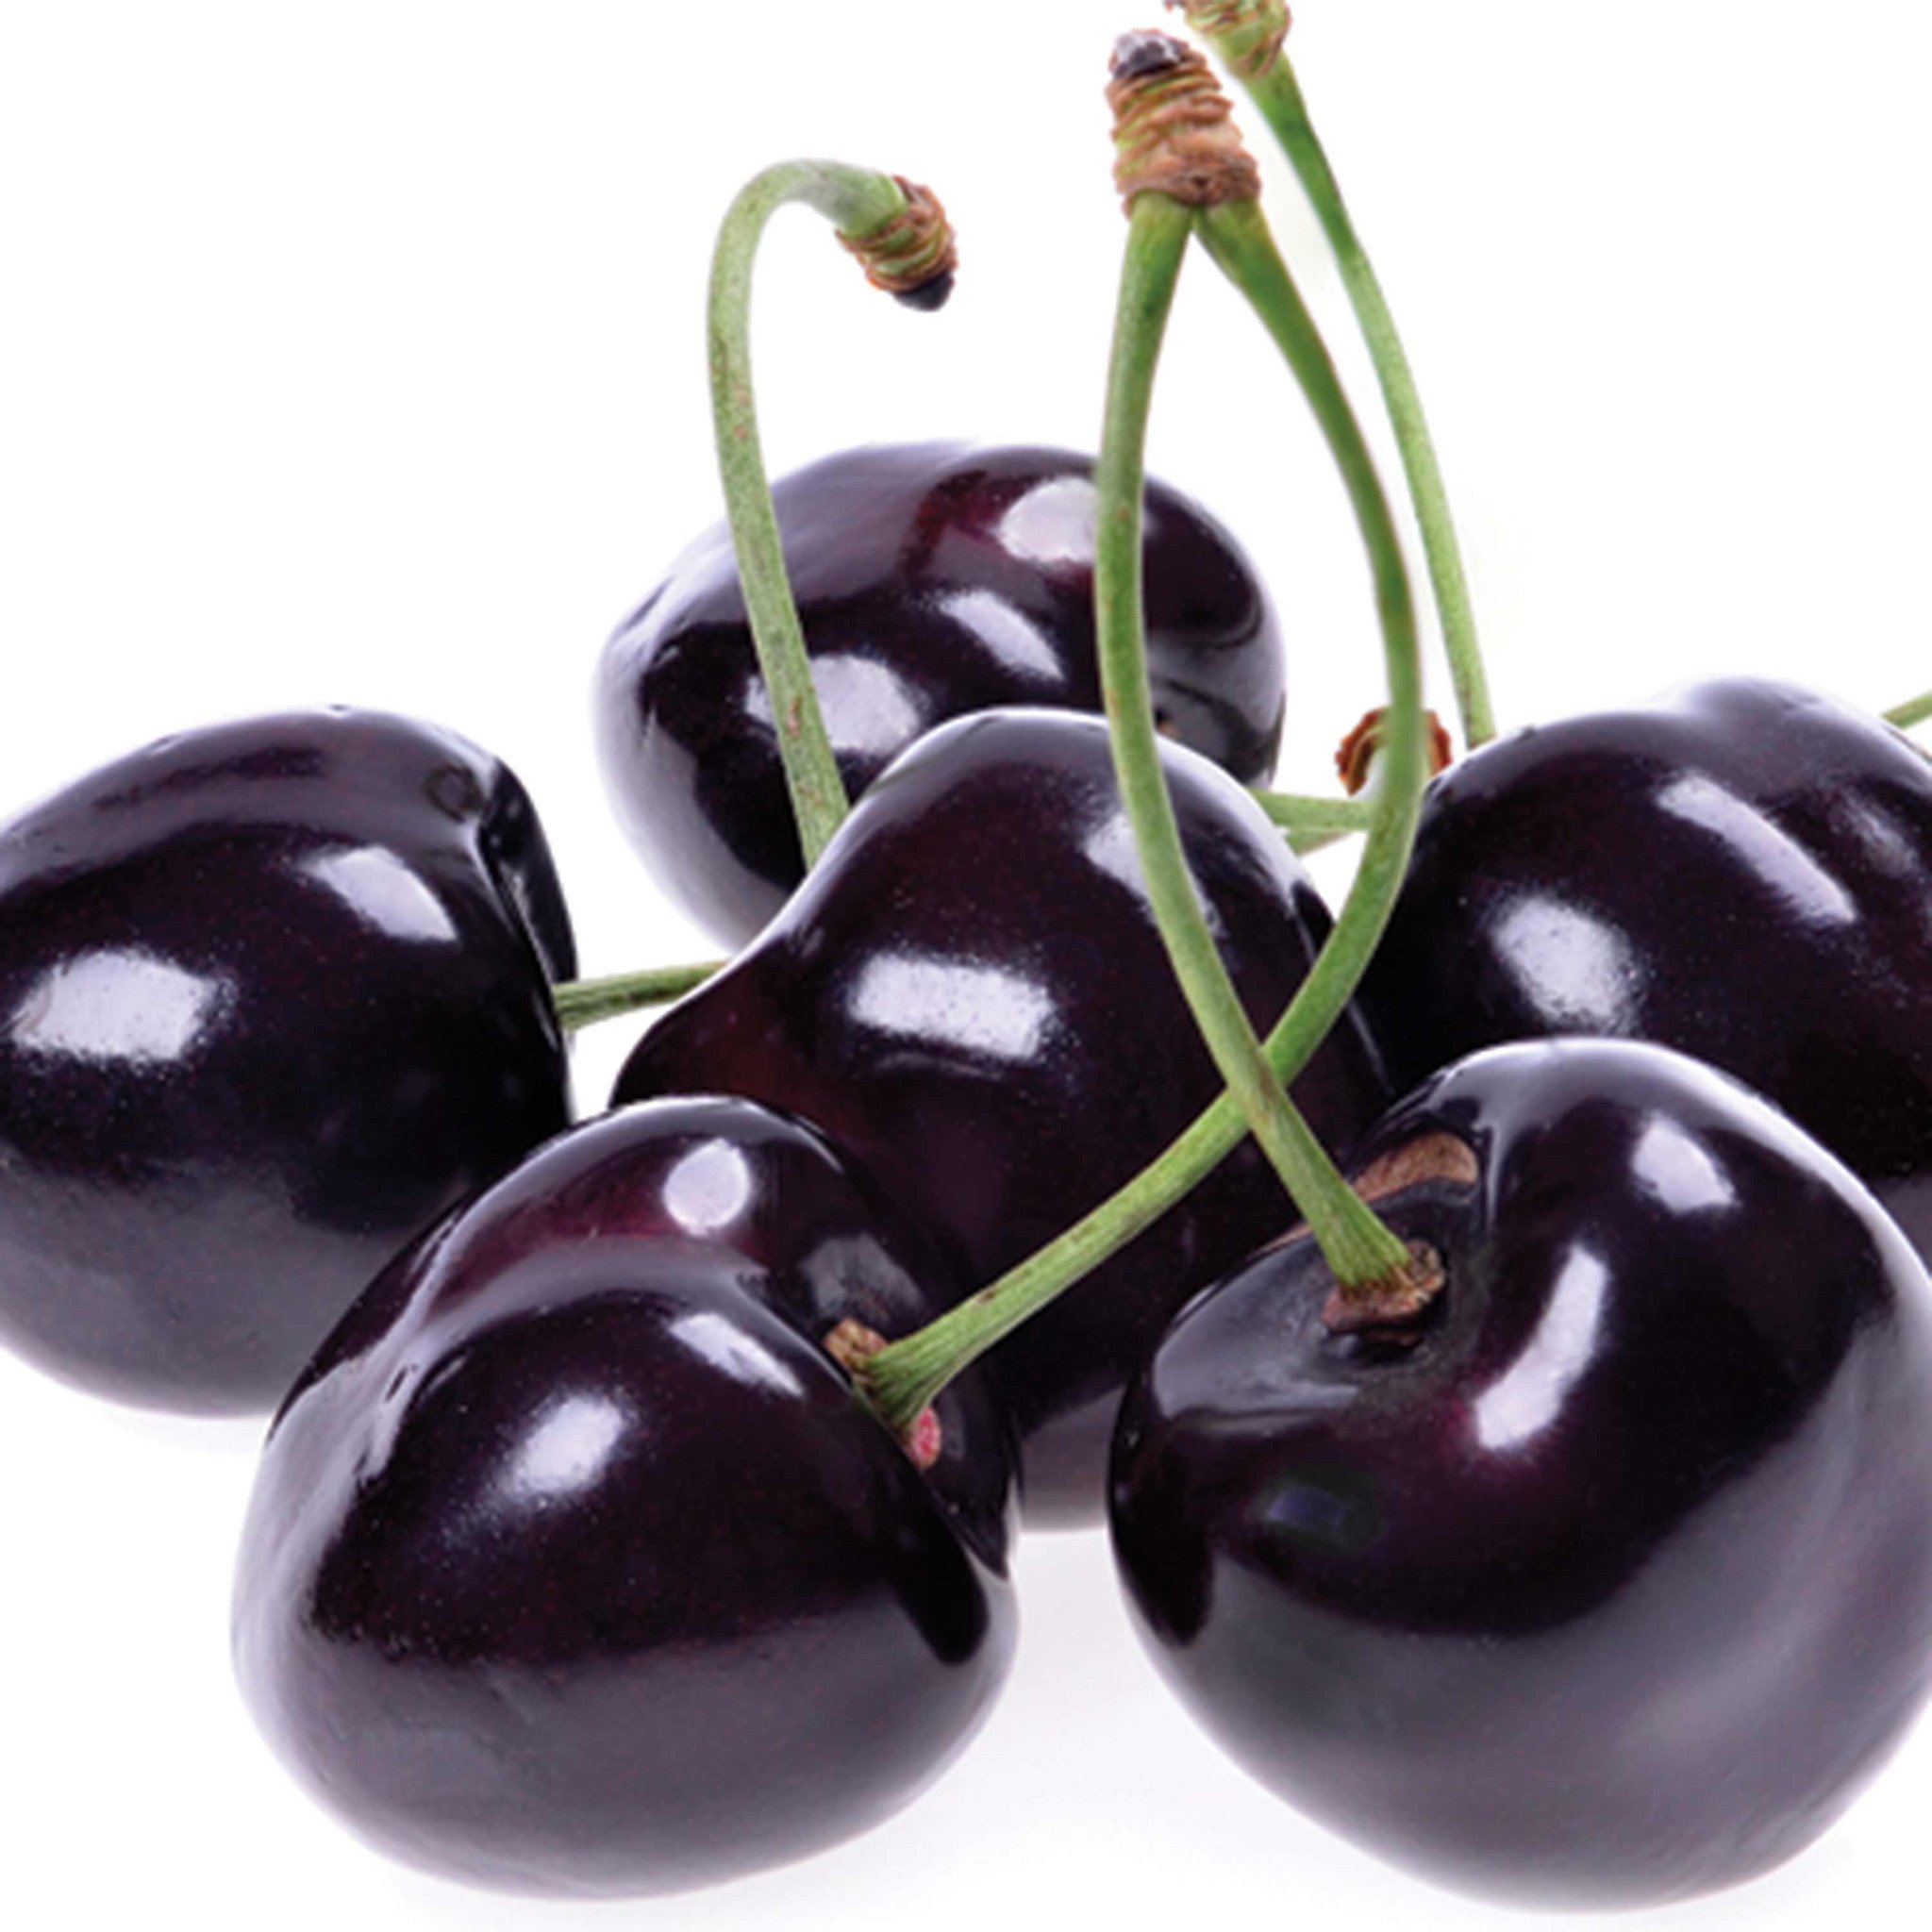 Black Cherry Dark Balsamic Vinegar